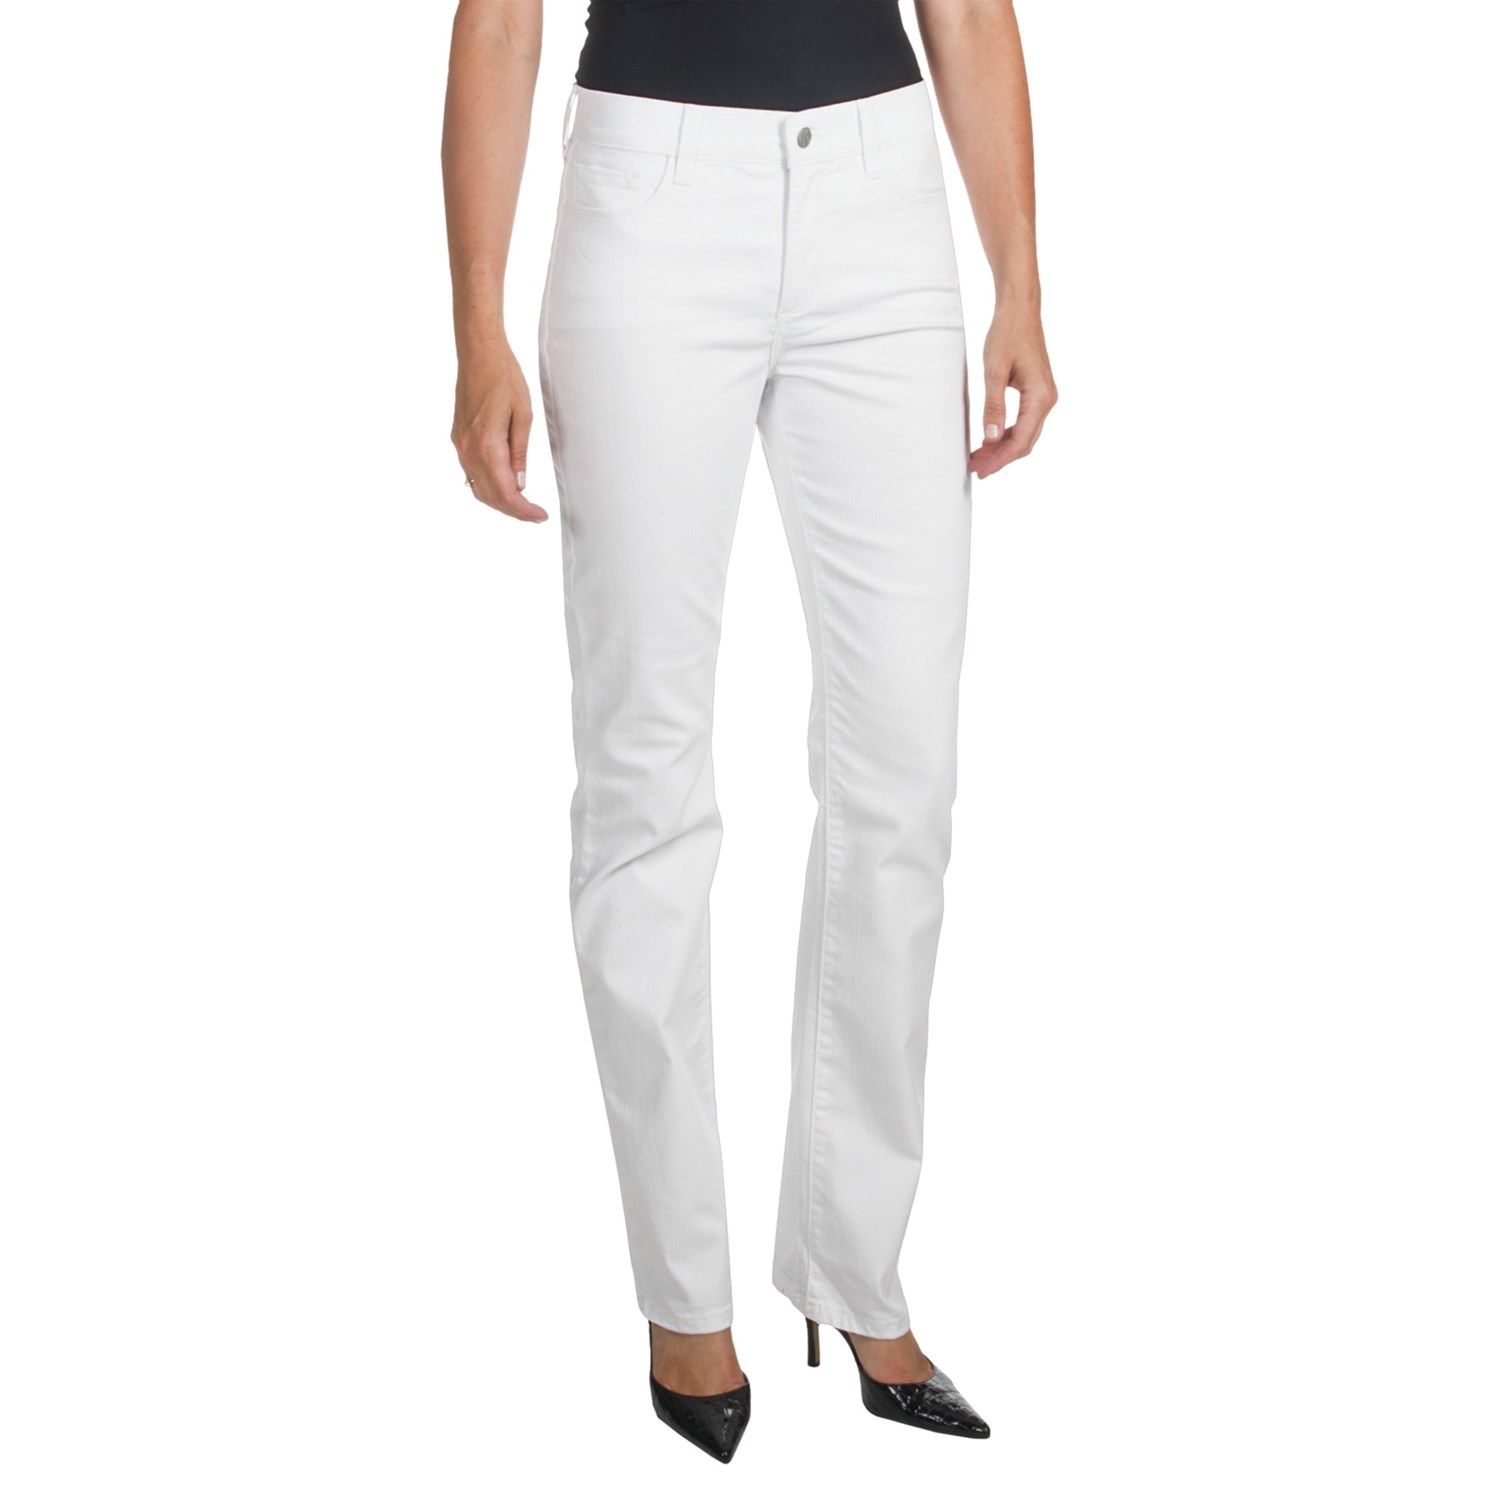 Pin Jeans For Women White on Pinterest